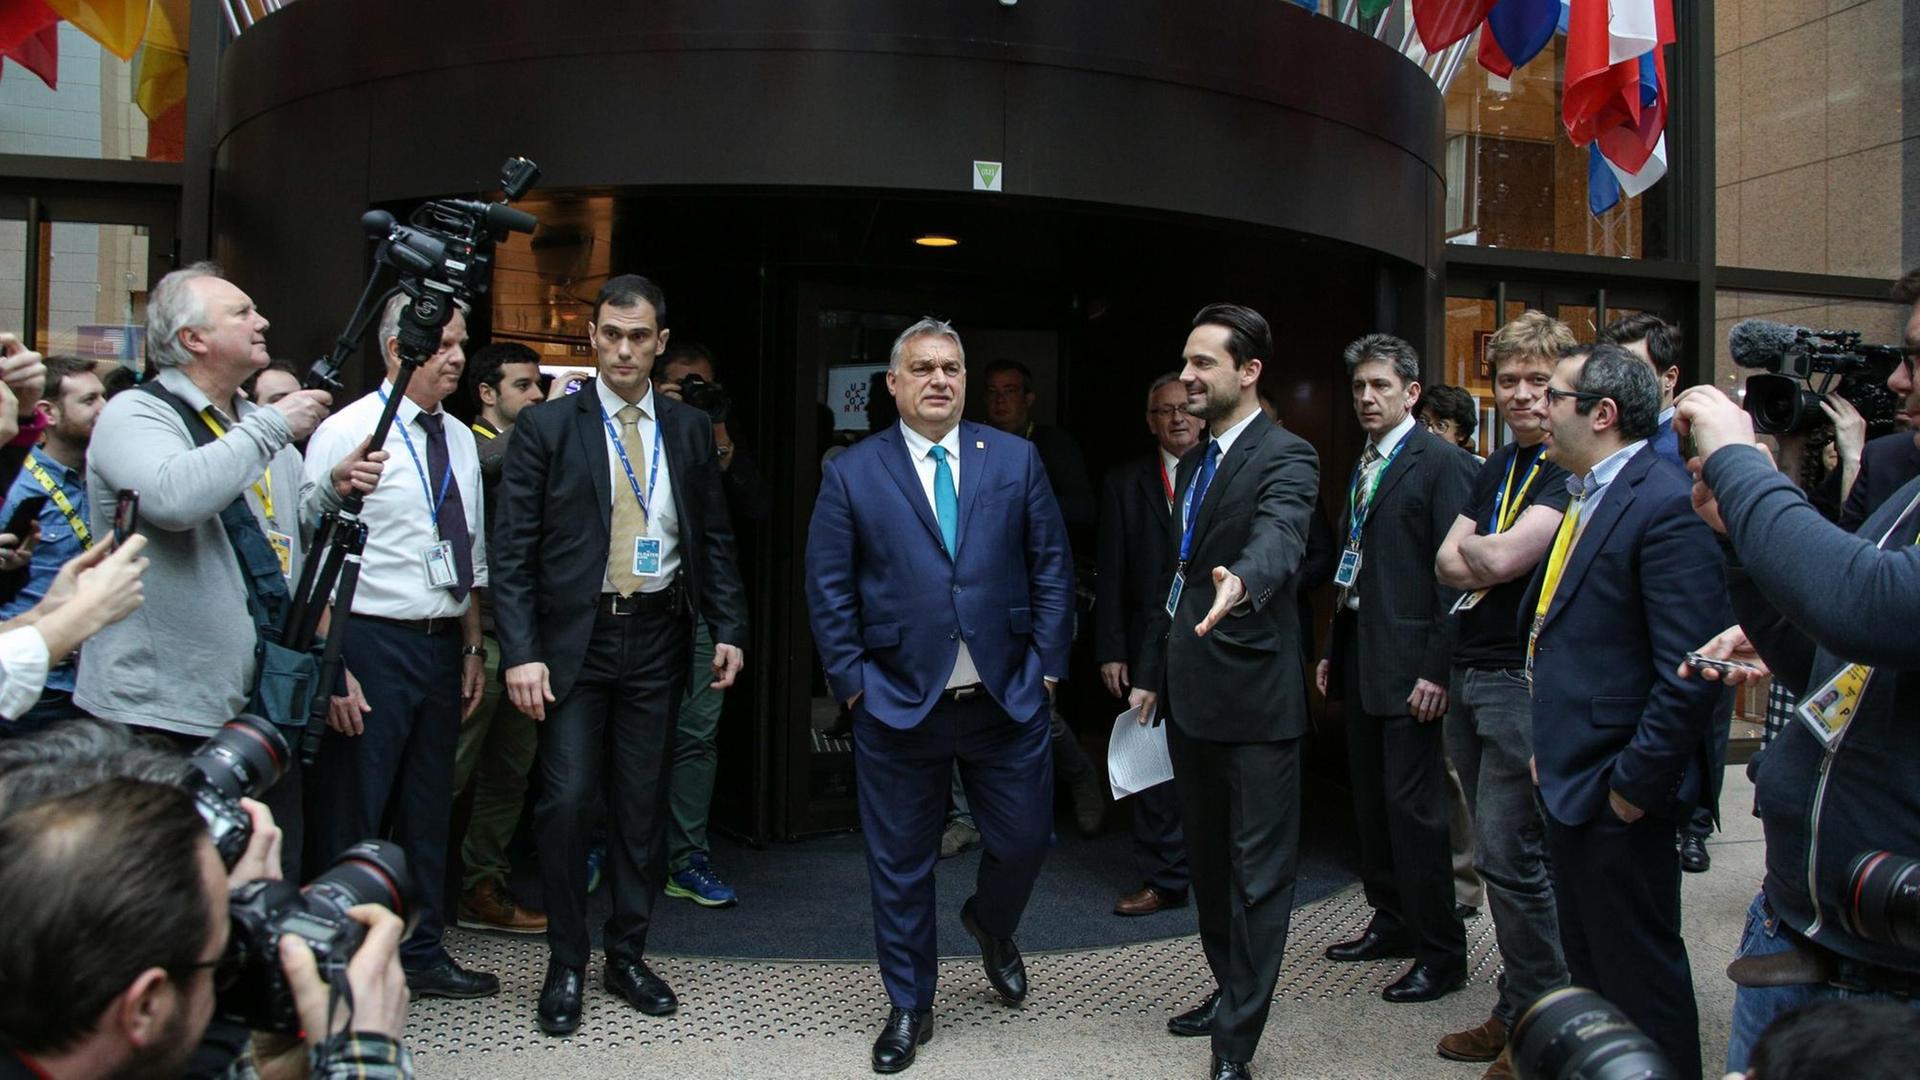 Ungarns Premierminister Victor Orbán verlässt nach einem Treffen des Europarates mit den Händen in den Hosentaschen ein Gebäude in Brüssel mit Fahnen europäischer Staaten über dem Eingang.